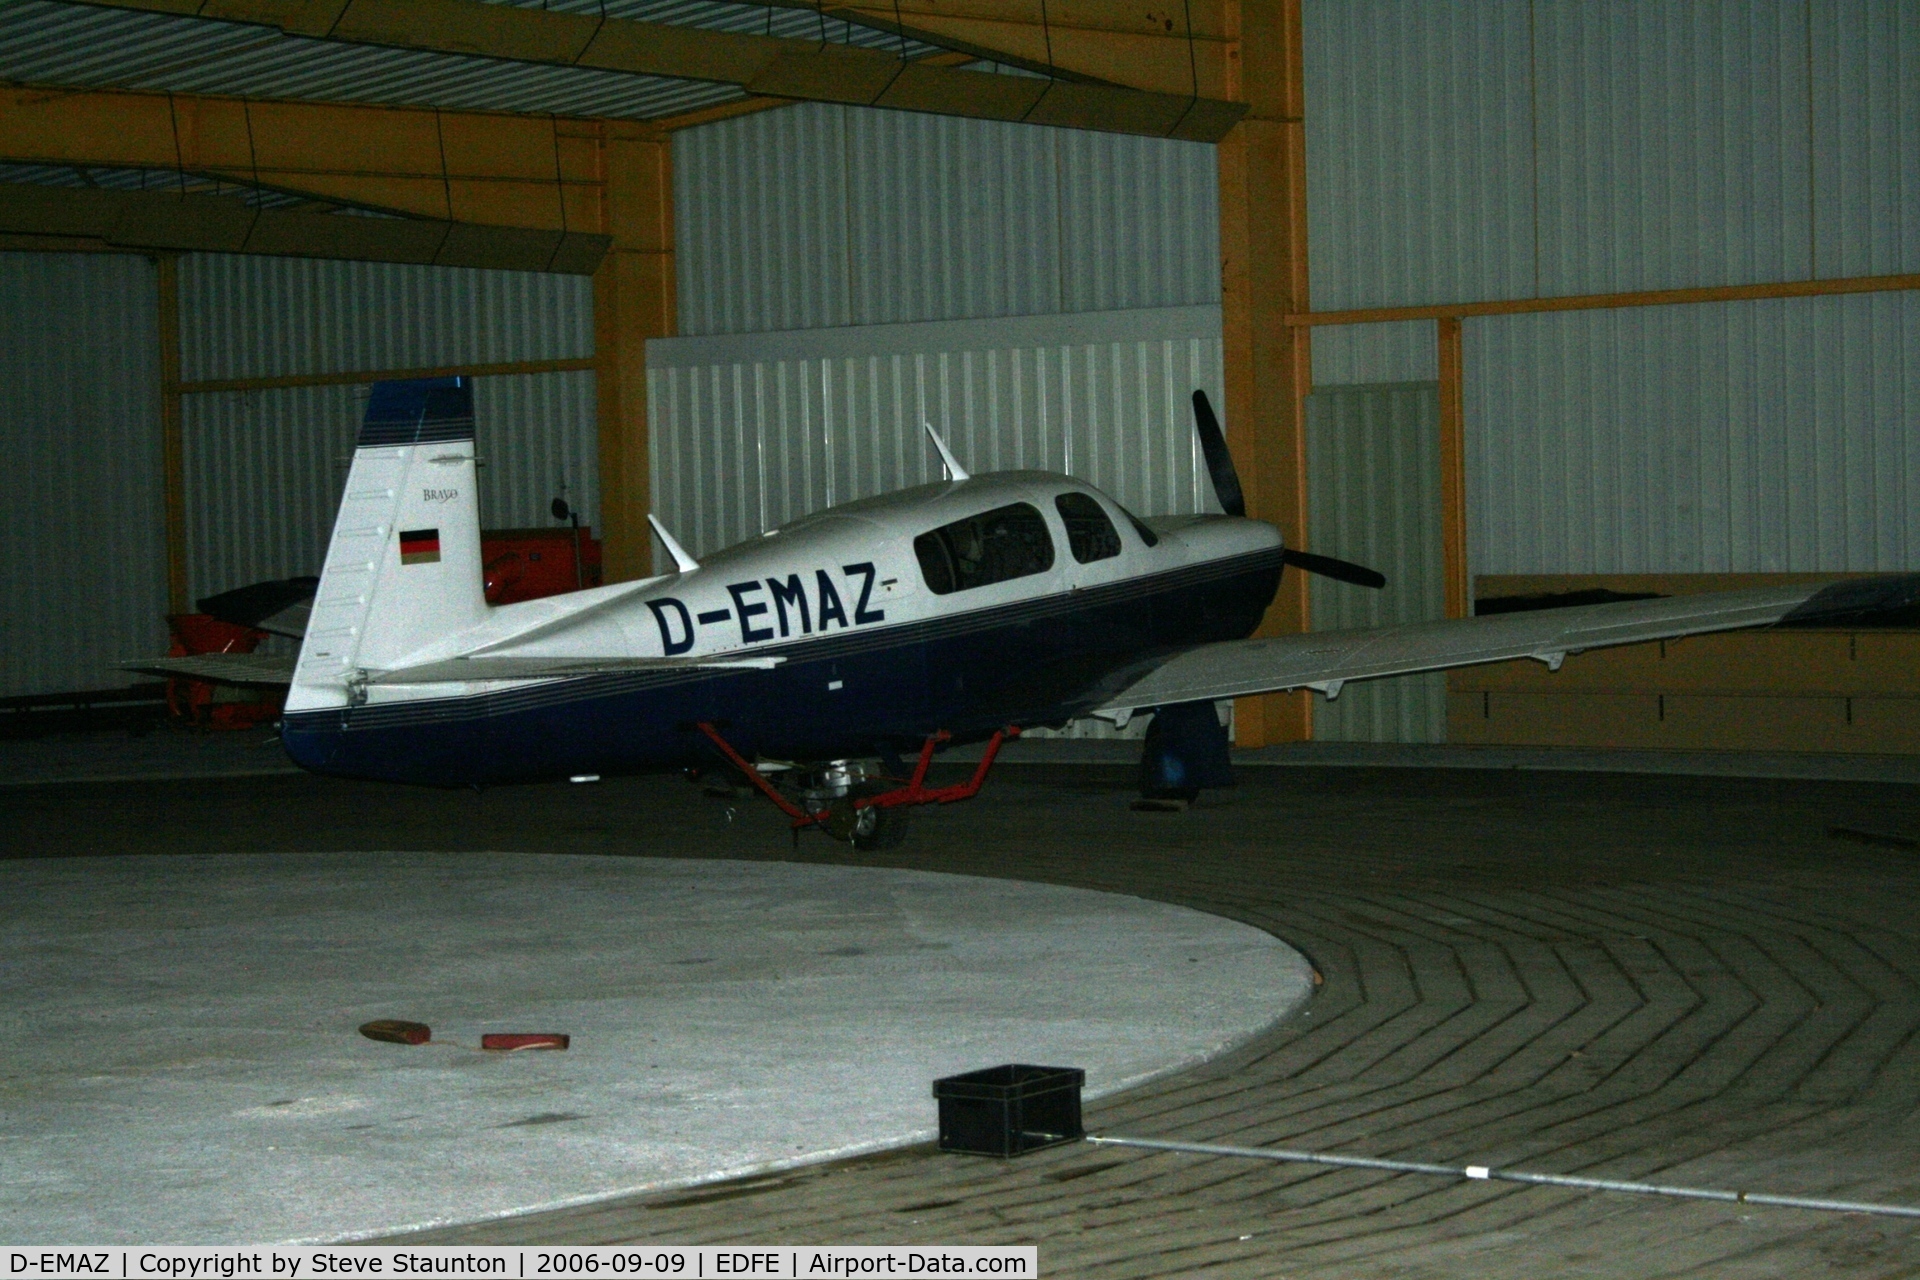 D-EMAZ, 1999 Mooney M20M TLS Bravo C/N 27-0273, Taken at Egelsbach September 2006